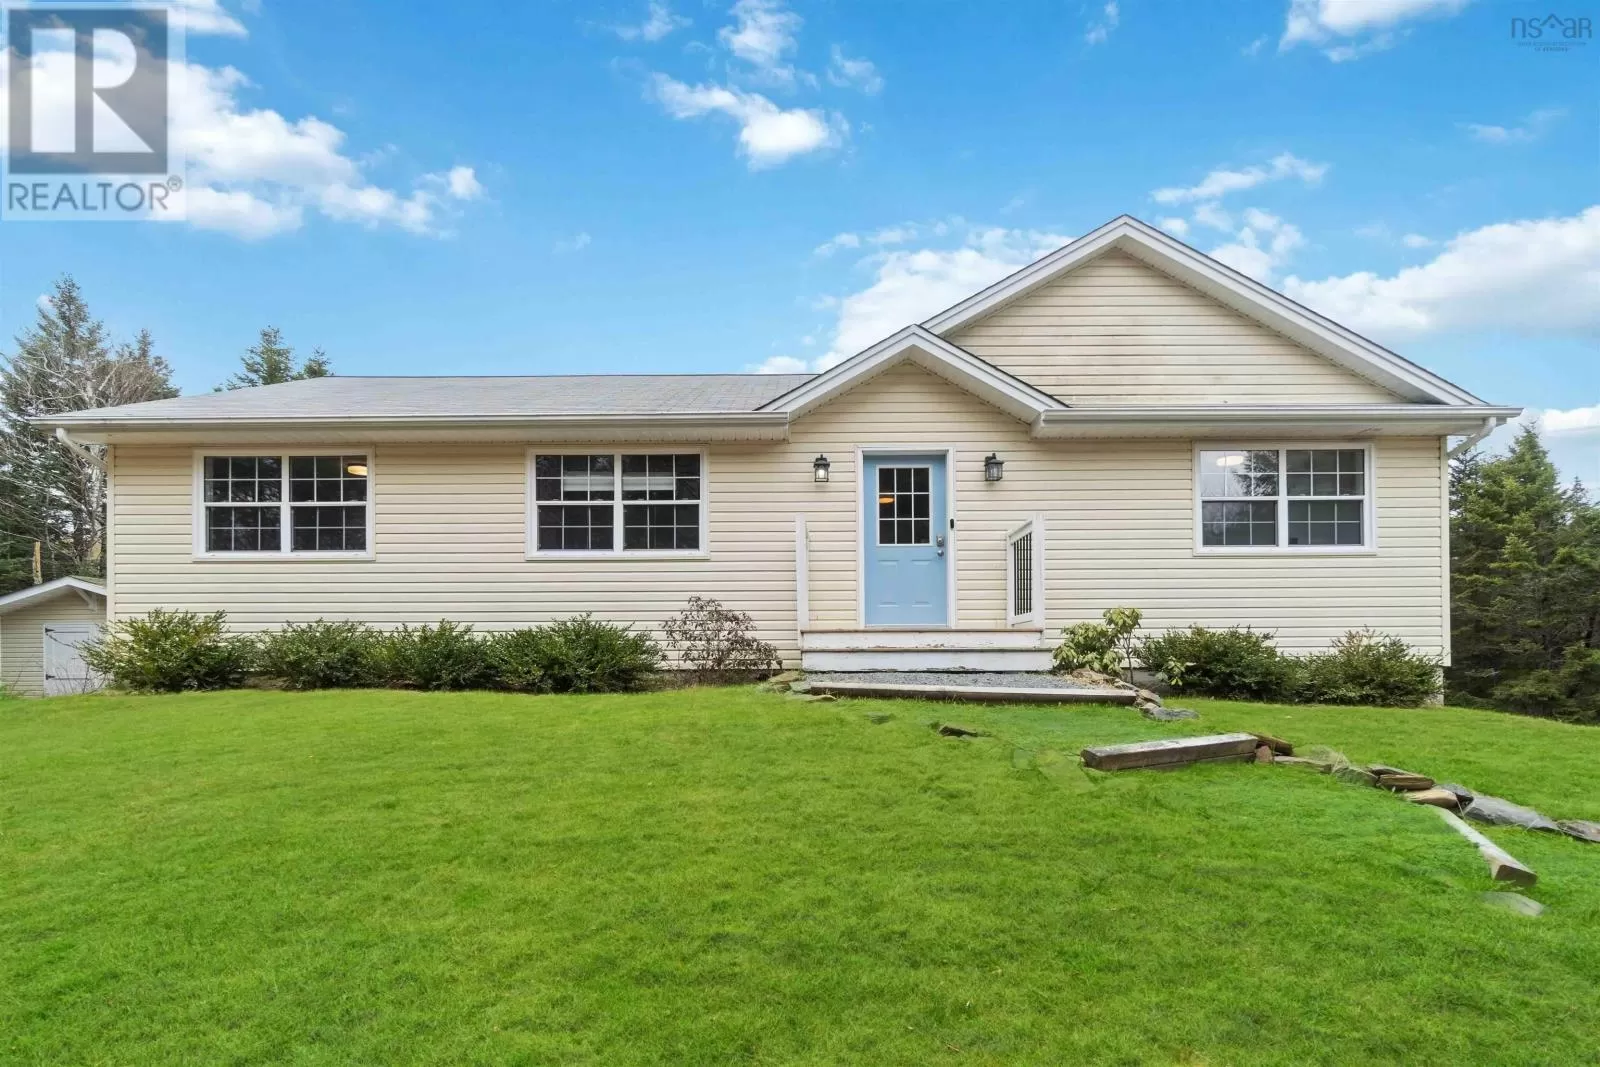 House for rent: 1673 White Hills Run, Hammonds Plains, Nova Scotia B4B 1W1